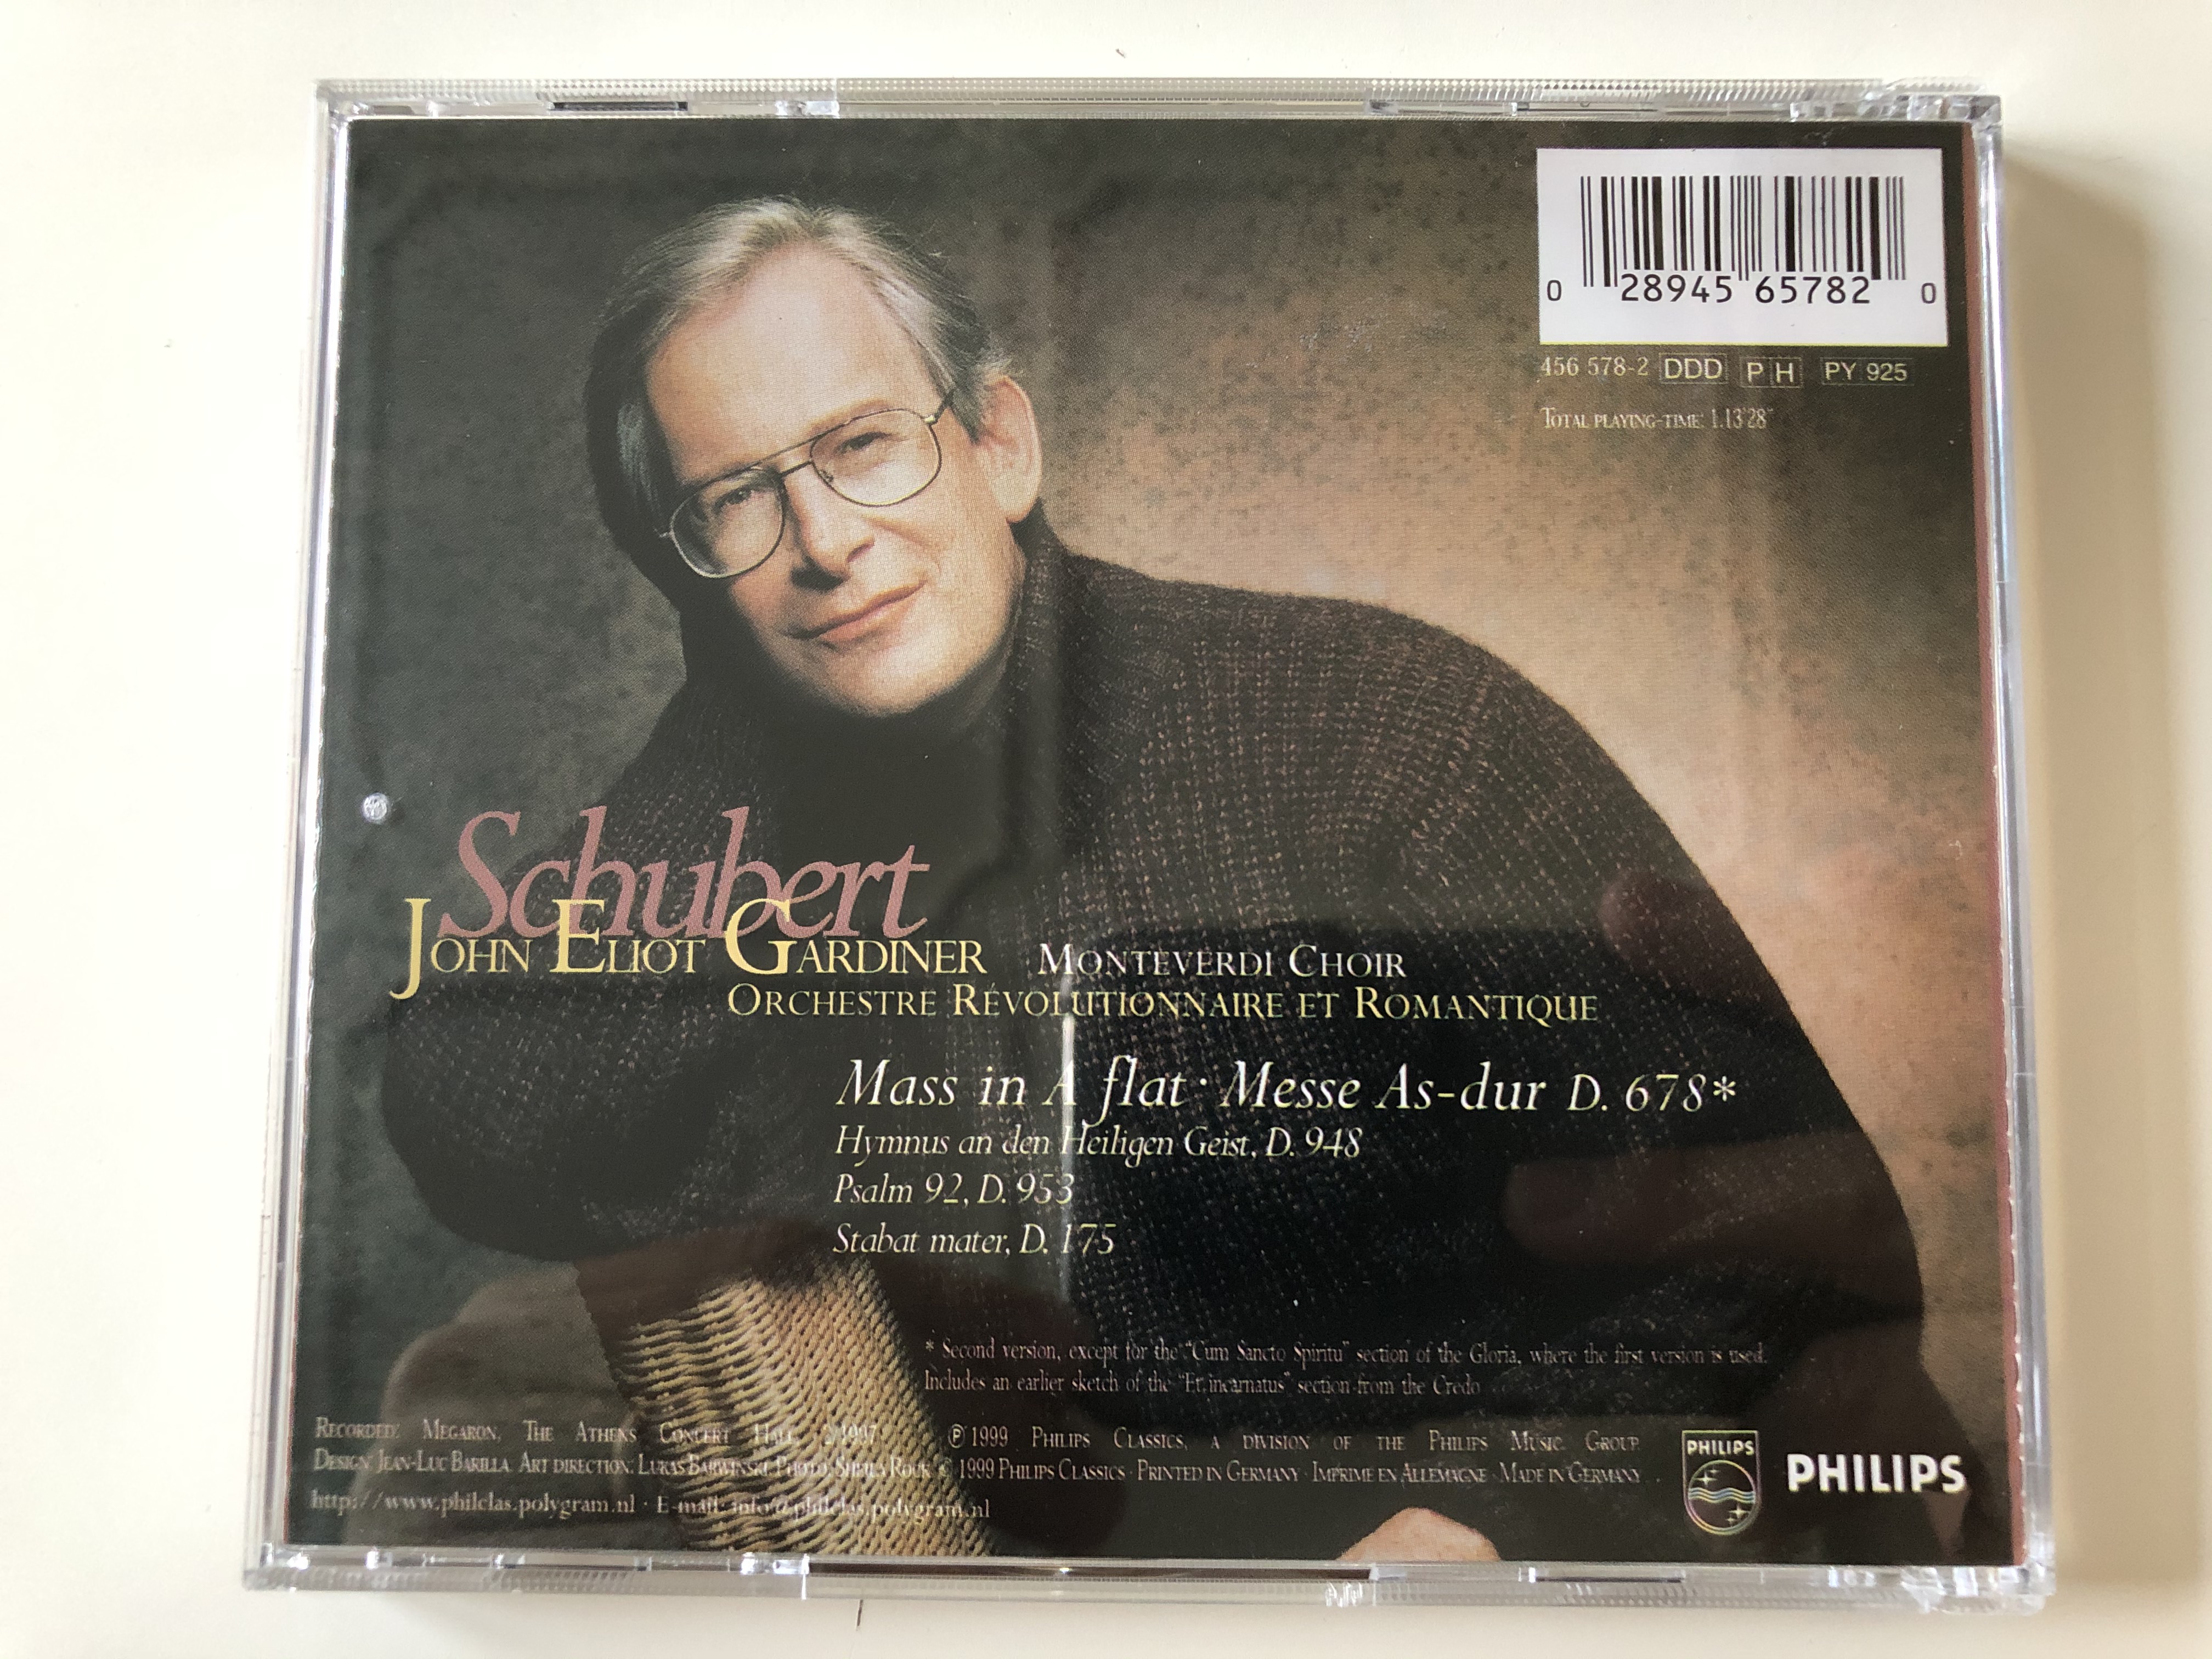 schubert-mass-in-a-flat-messe-as-dur-john-eliot-gardiner-monteverdi-choir-orchestre-revolutionnaire-et-romantique-philips-audio-cd-1999-456-578-2-11-.jpg